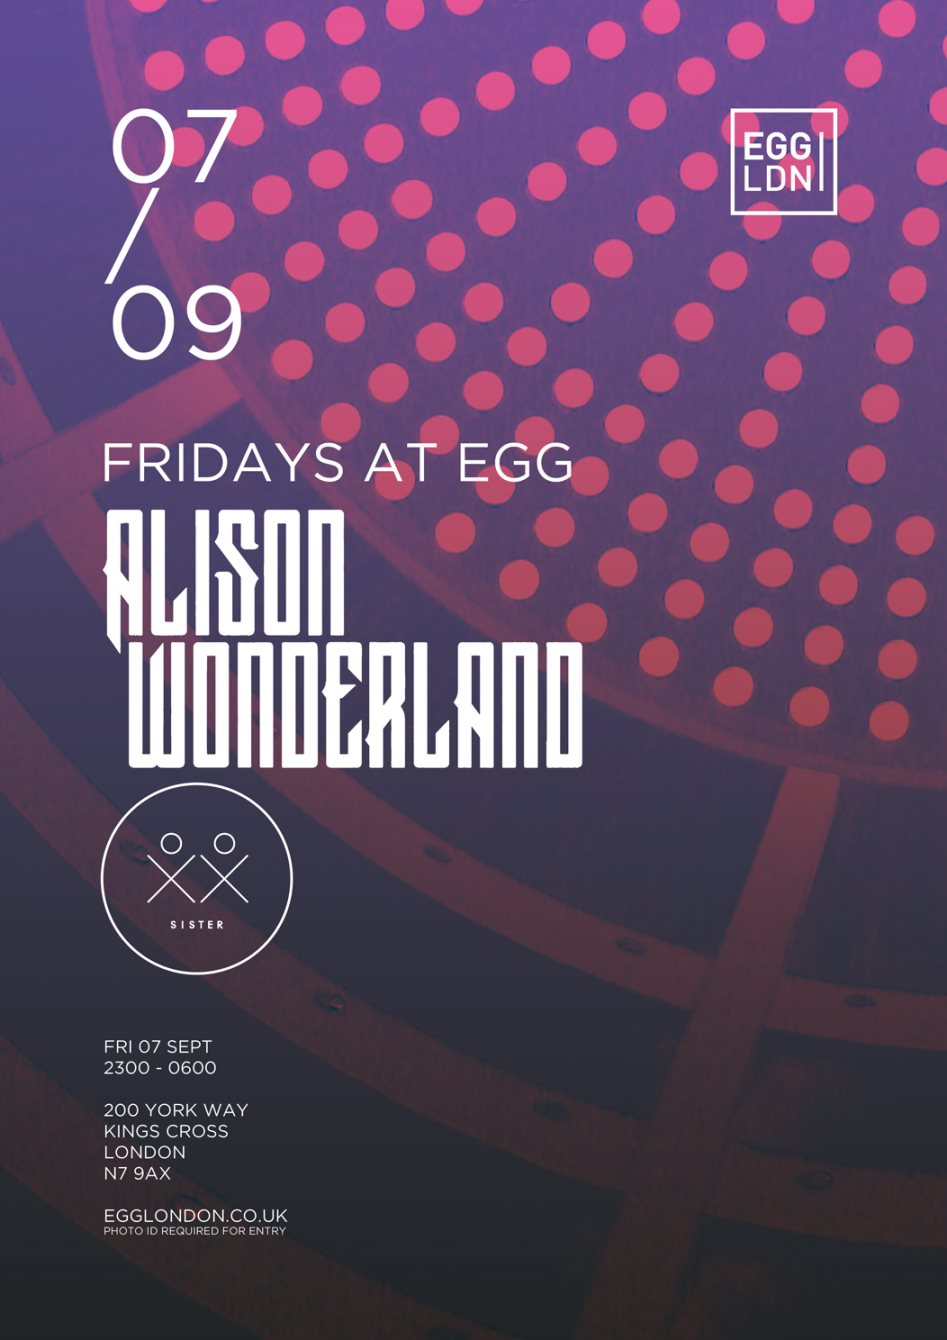 Fridays at Egg: Alison Wonderland & Sister Collective - Flyer front